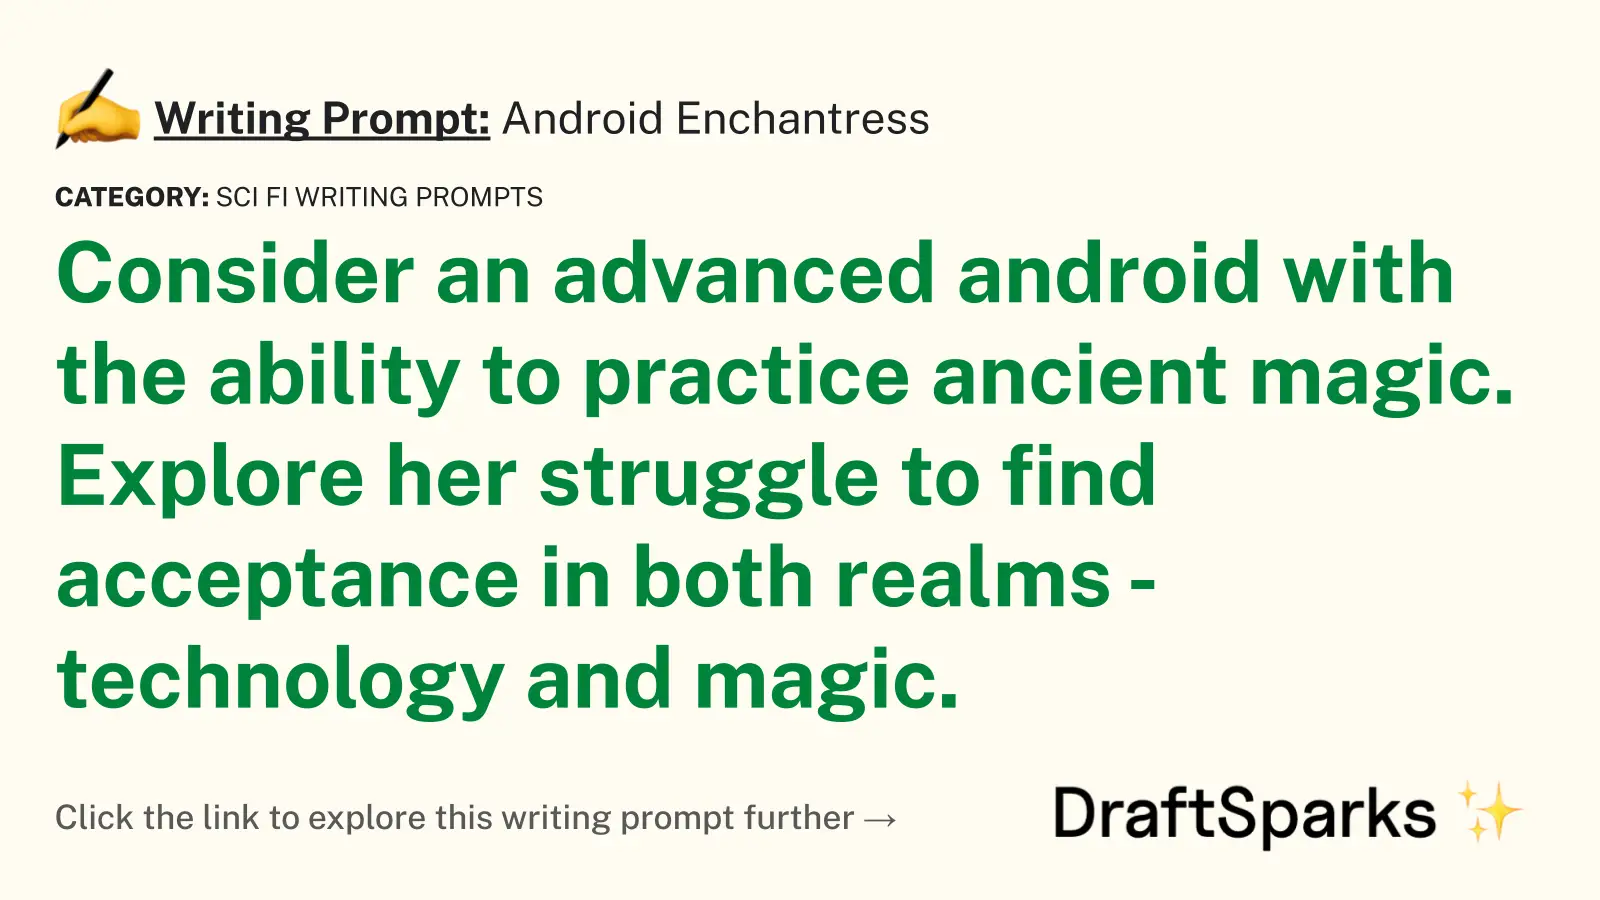 Android Enchantress